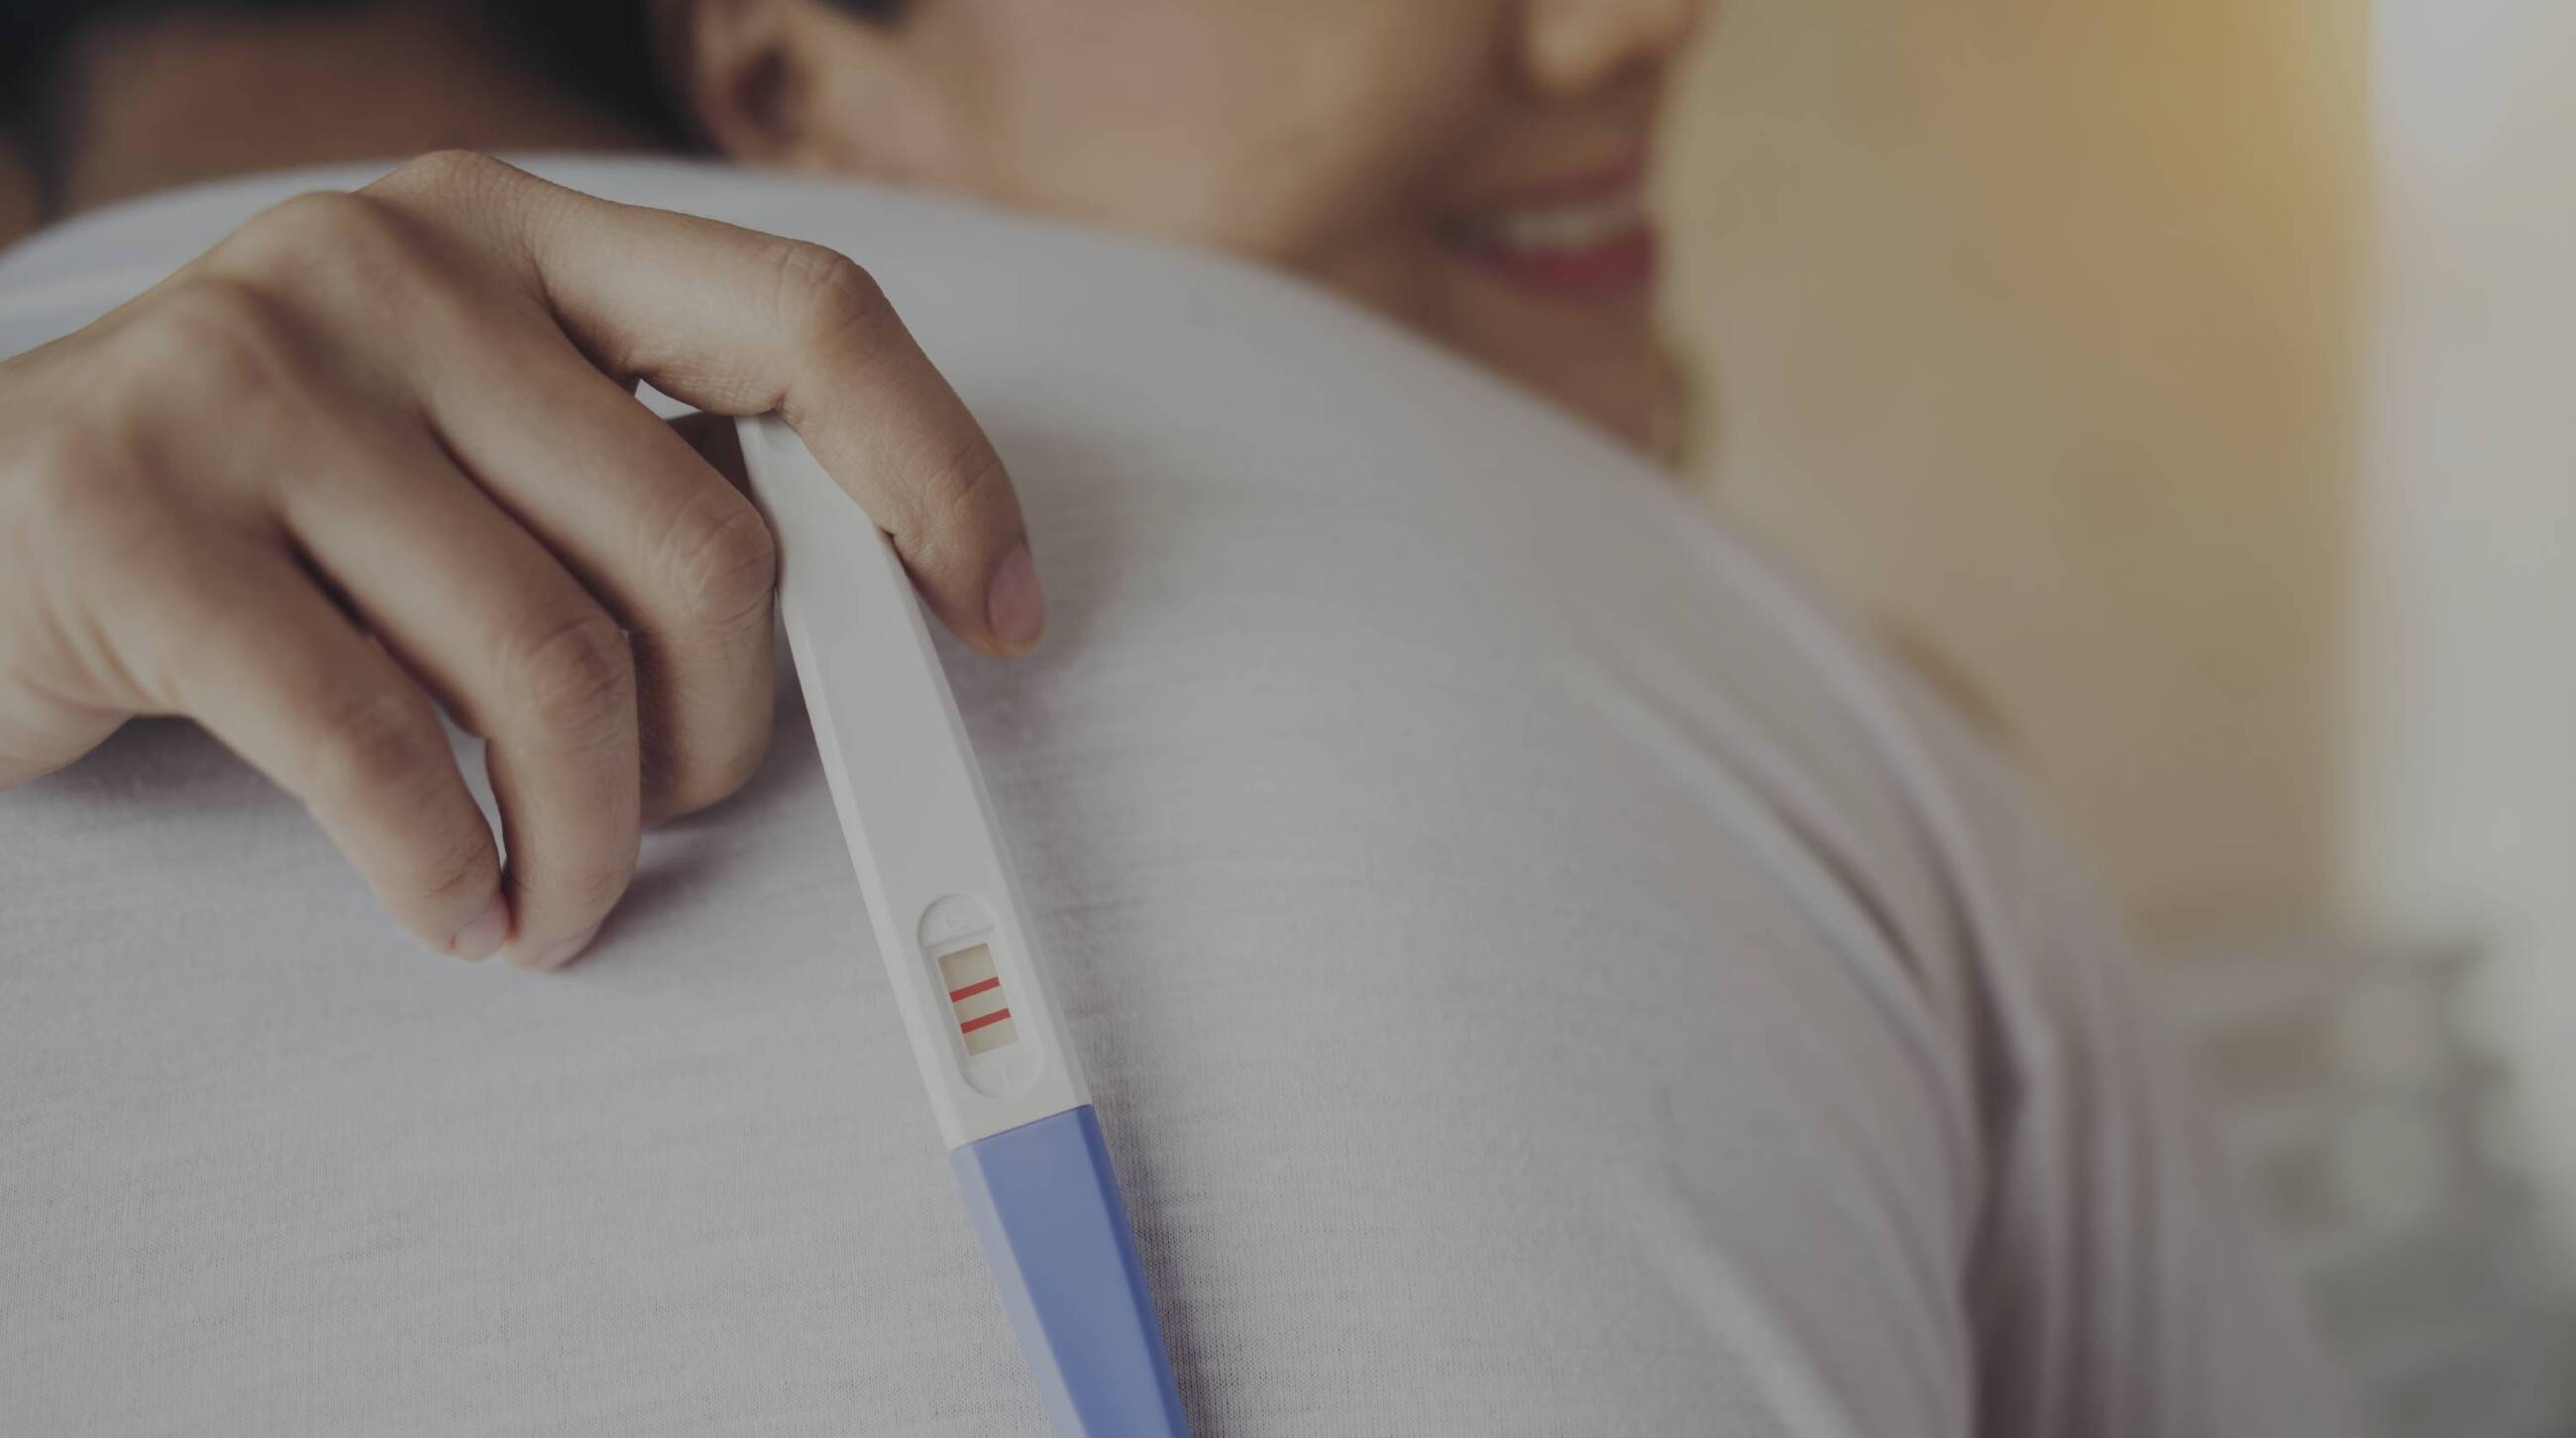 Cómo funciona un test de embarazo Clearblue?